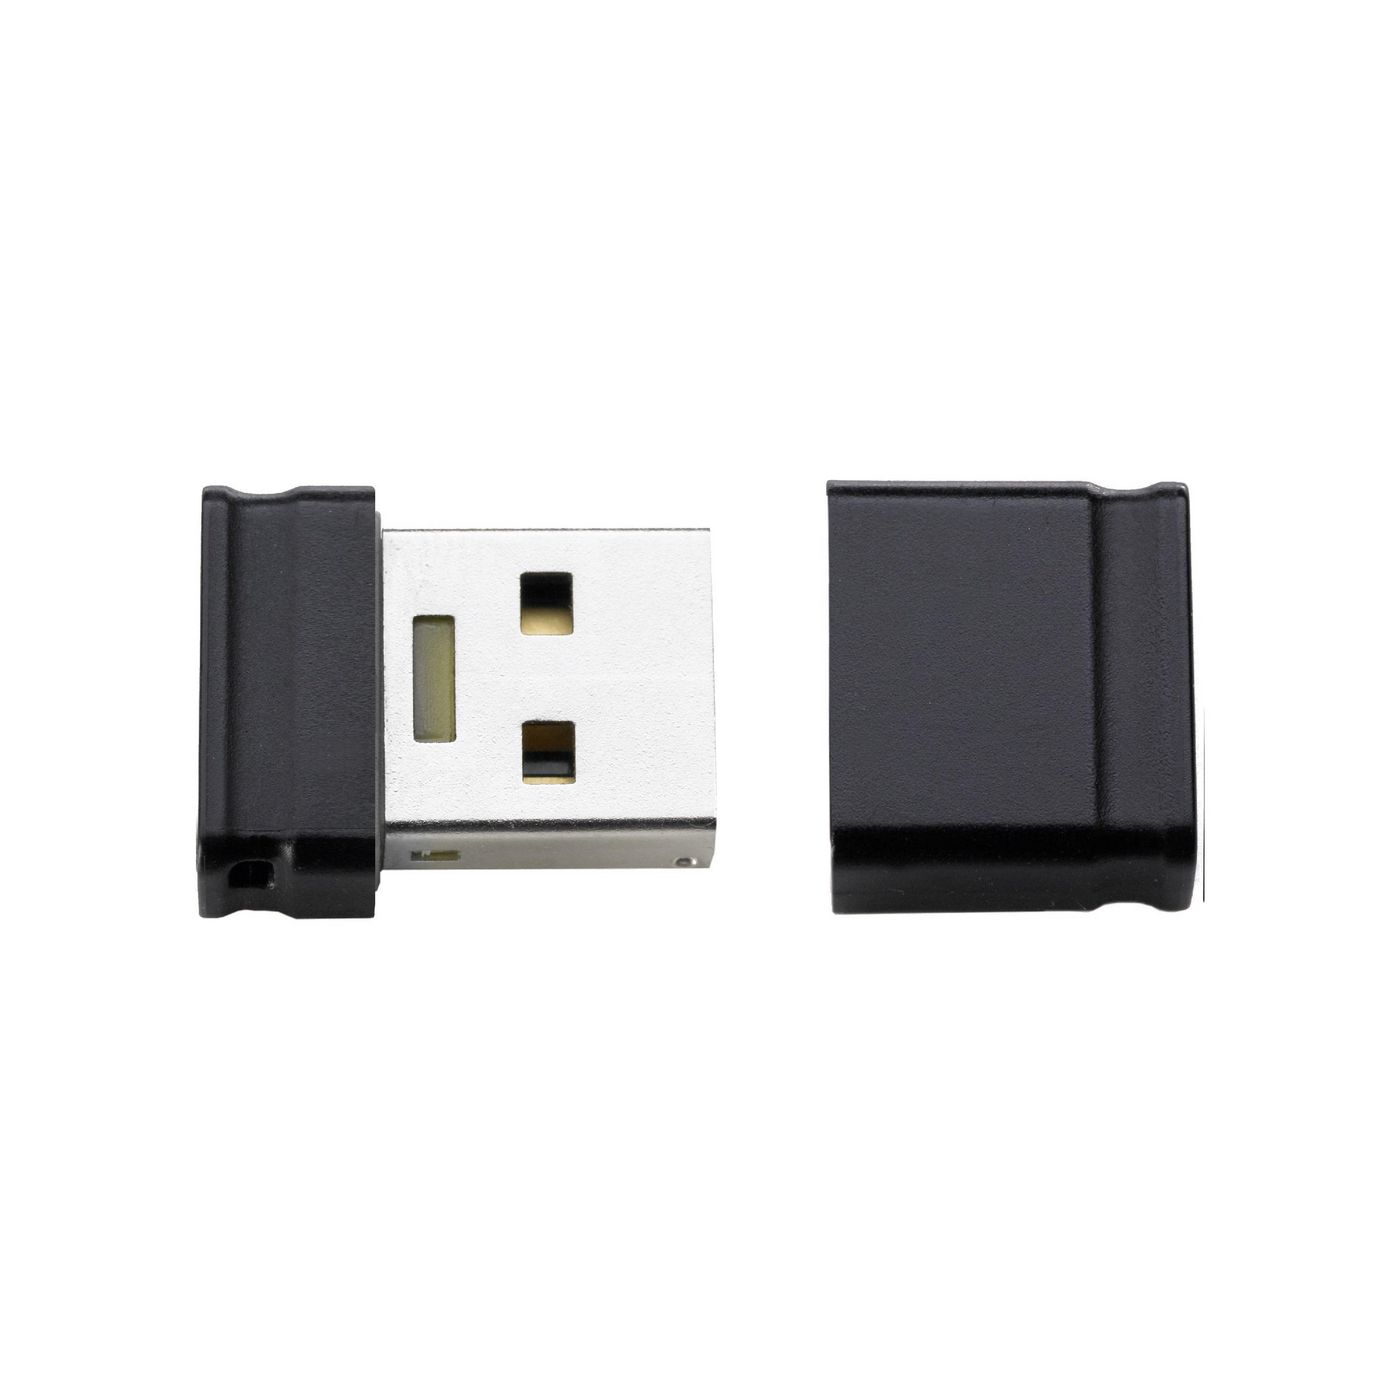 INTENSO USB Drive 2.0 - 32GB 3500480